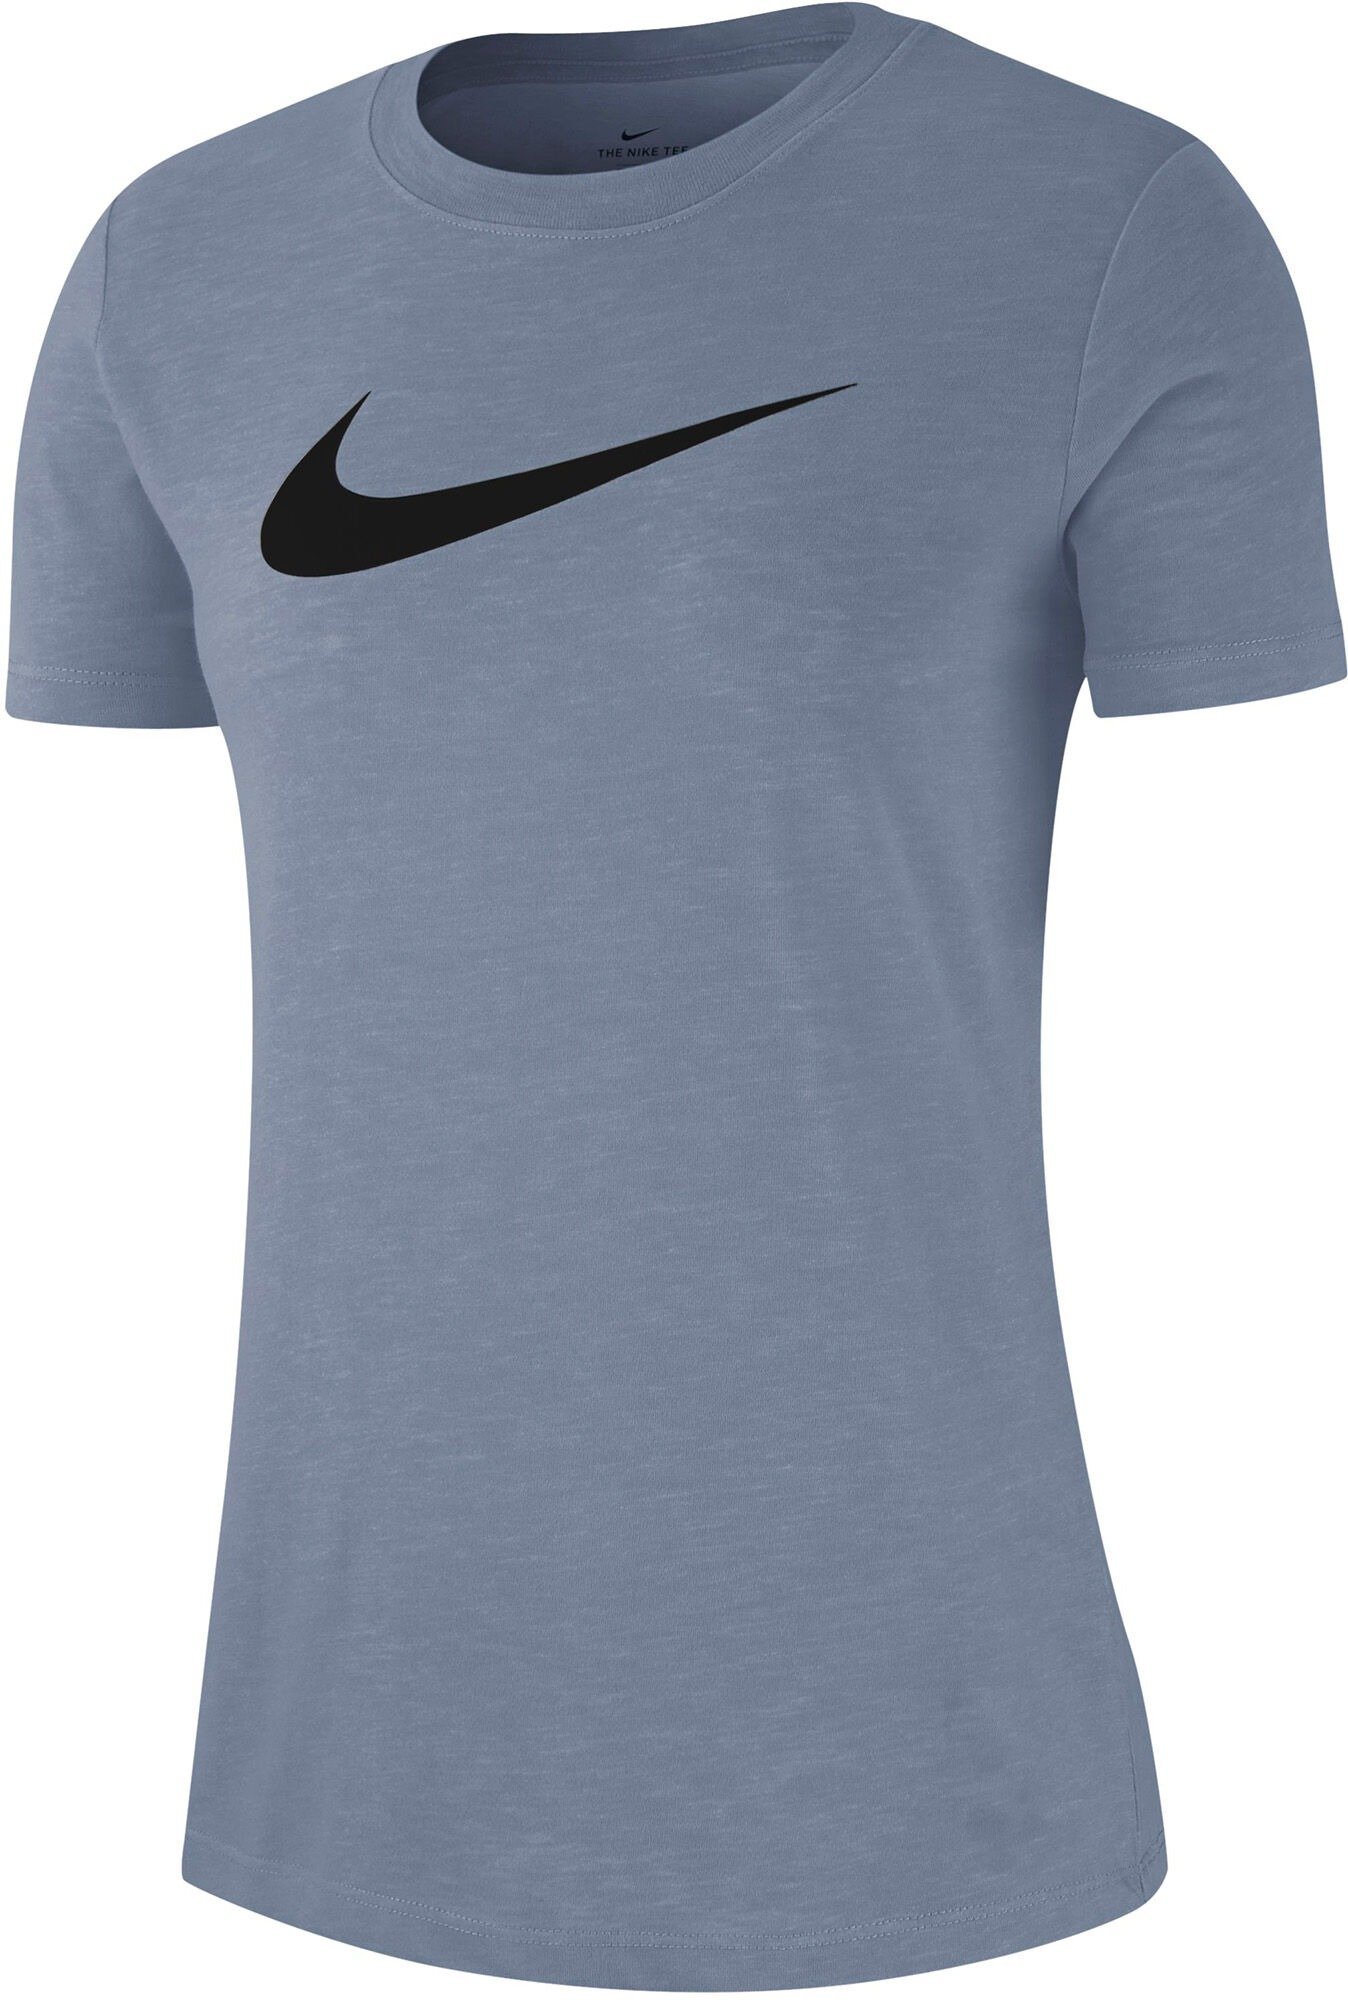 Nike Dry W Training T-Shirt